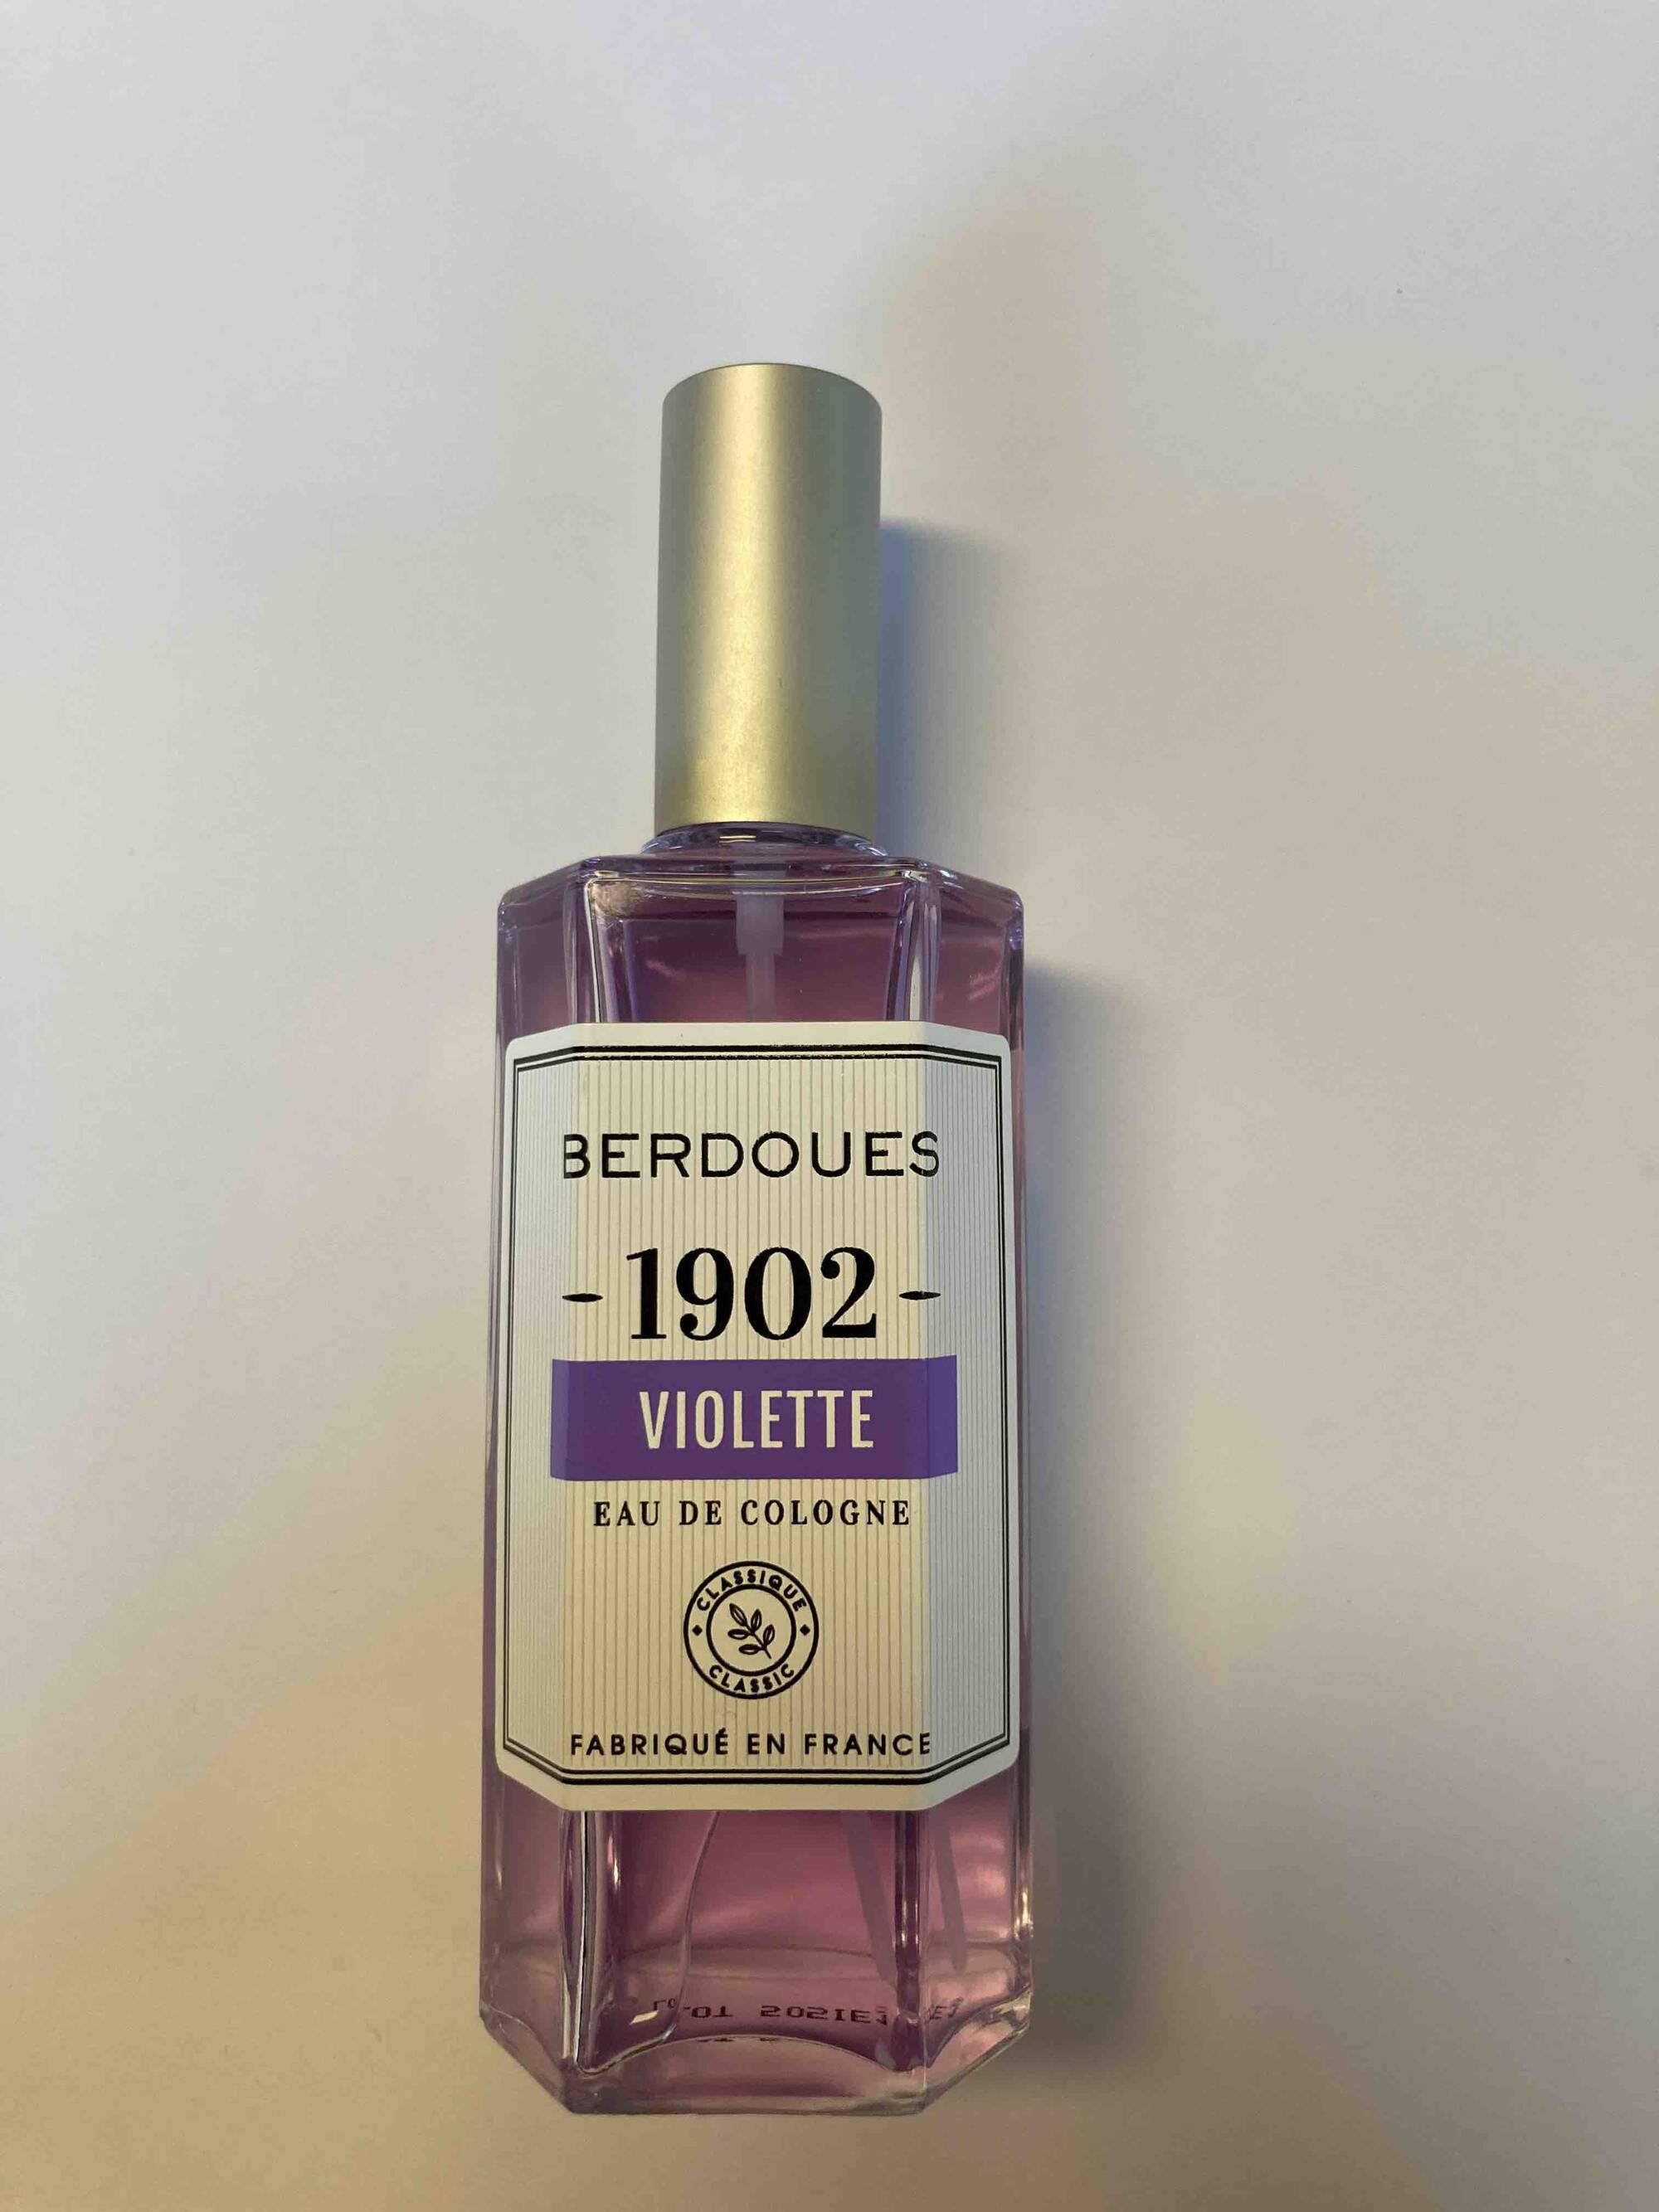 BERDOUES - 1902 violette - Eau de cologne